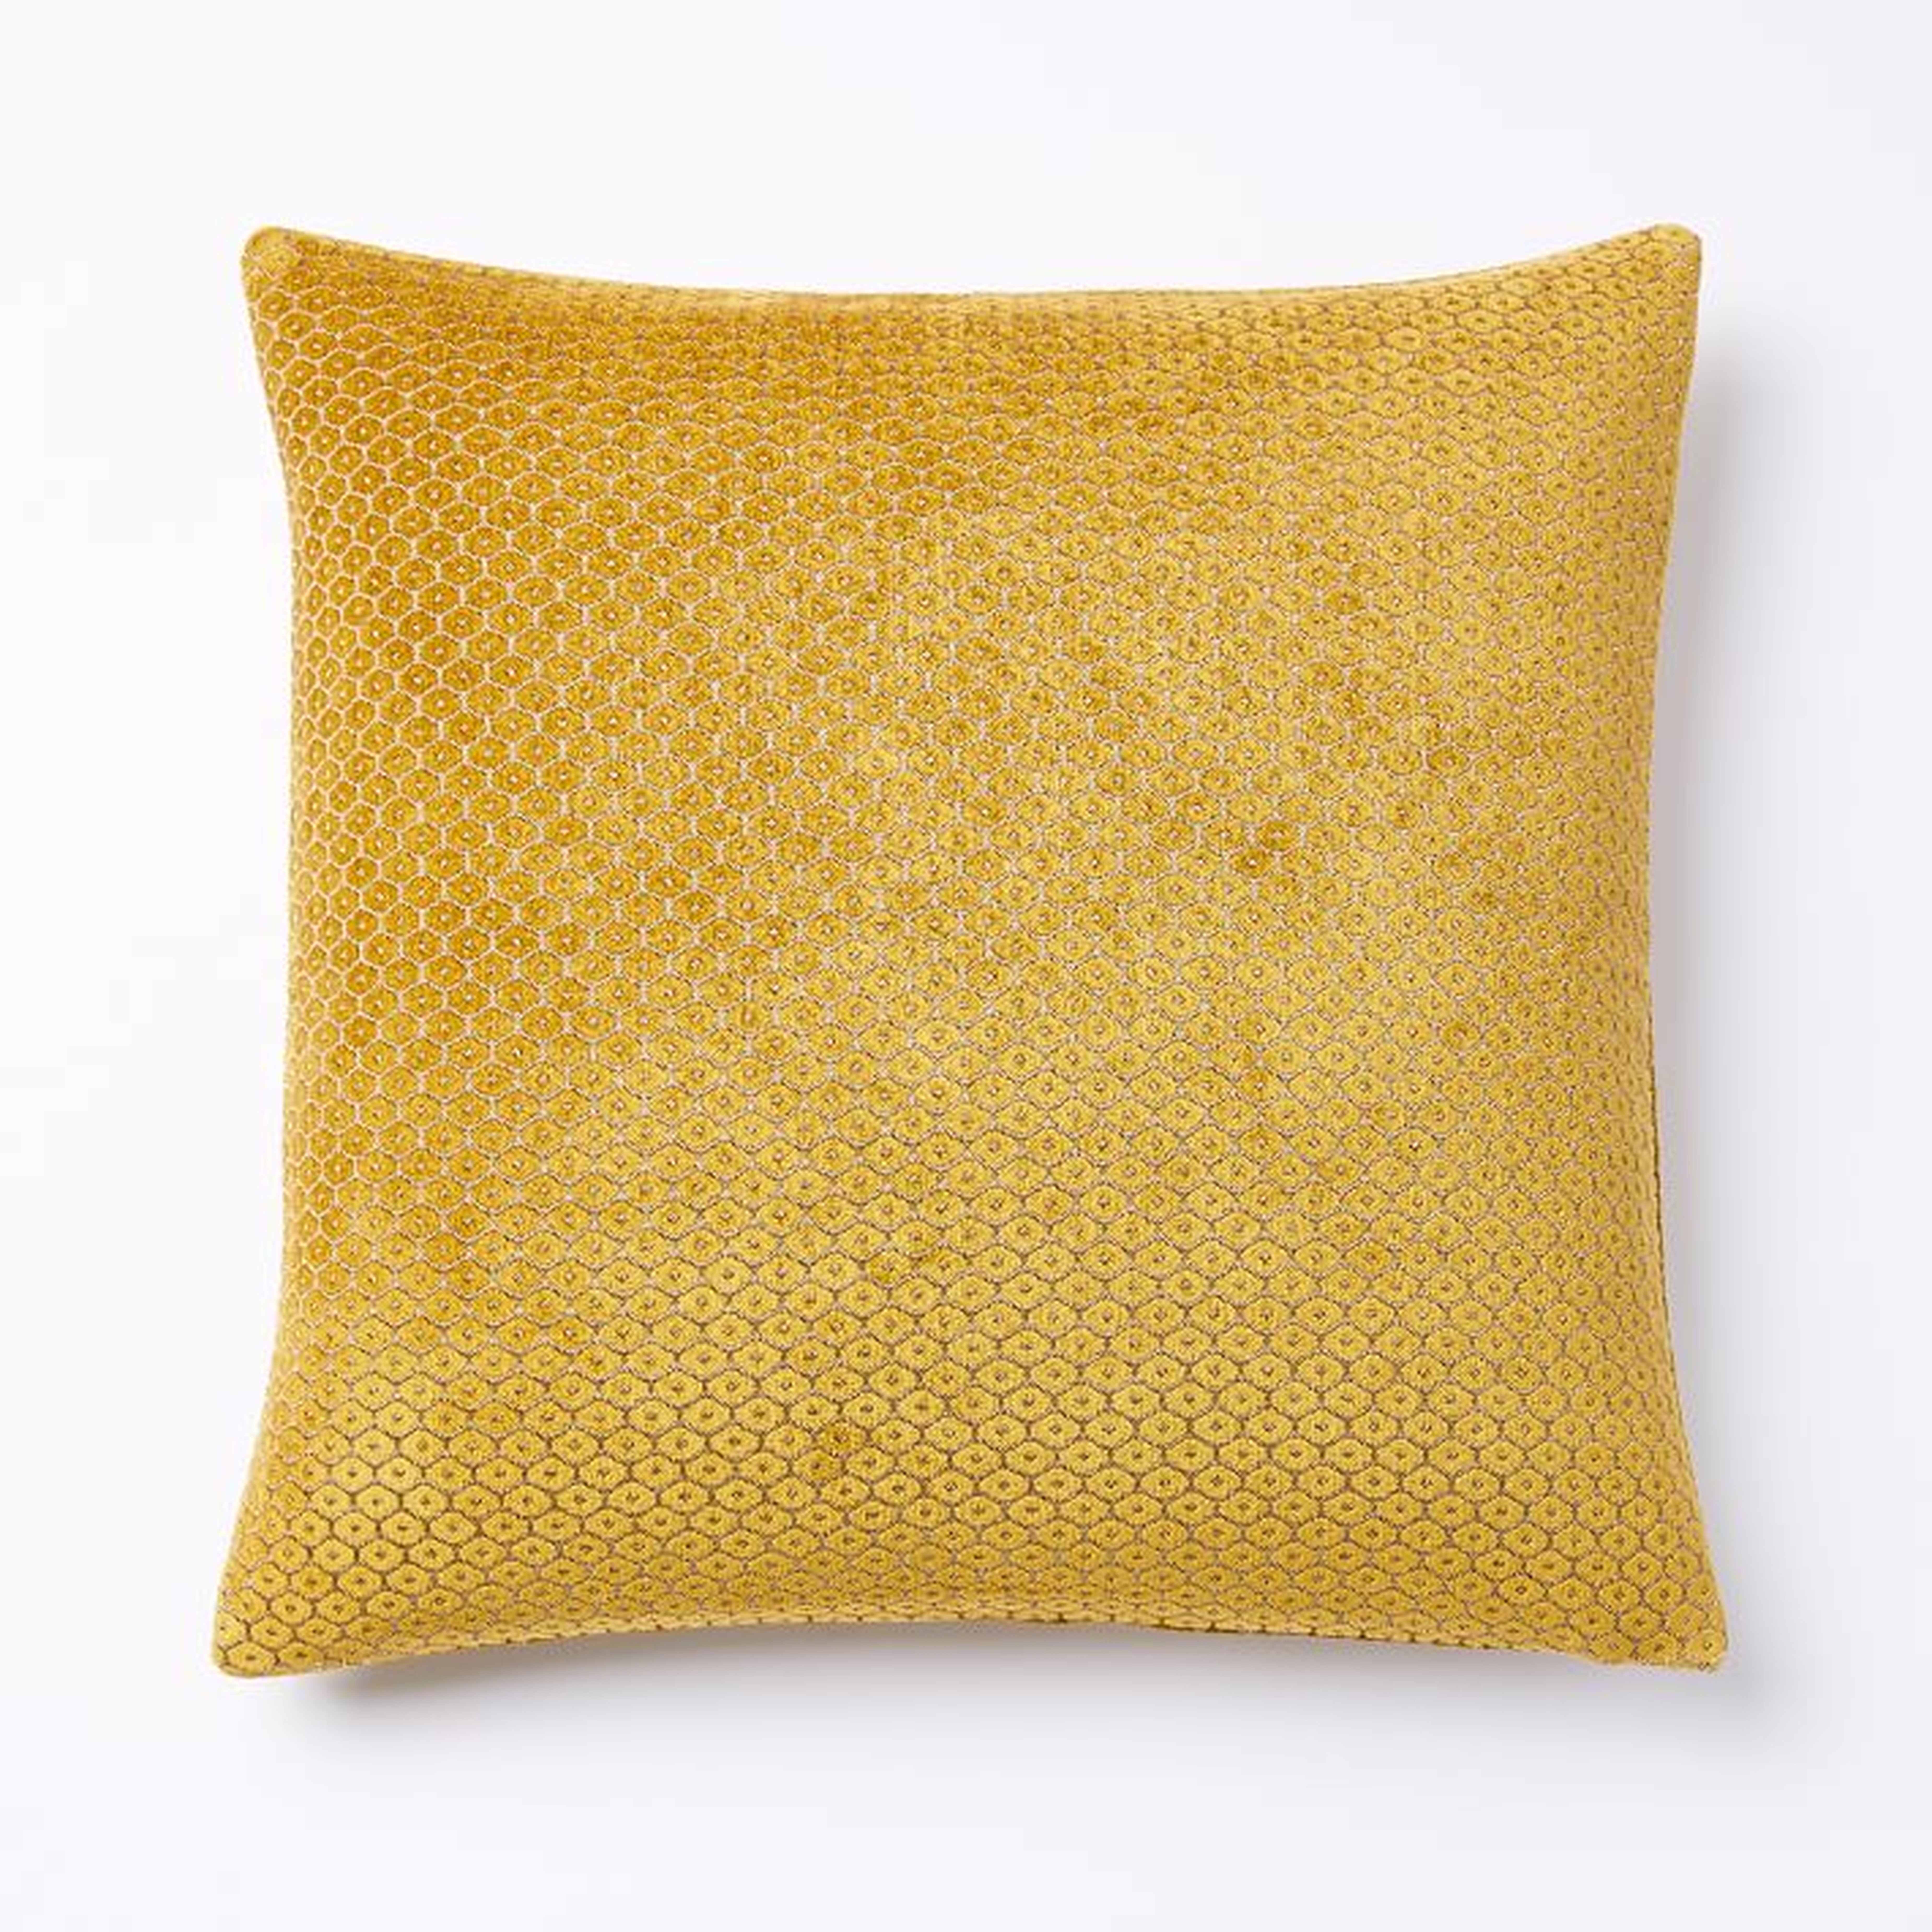 Honeycomb Velvet Pillow Cover - West Elm